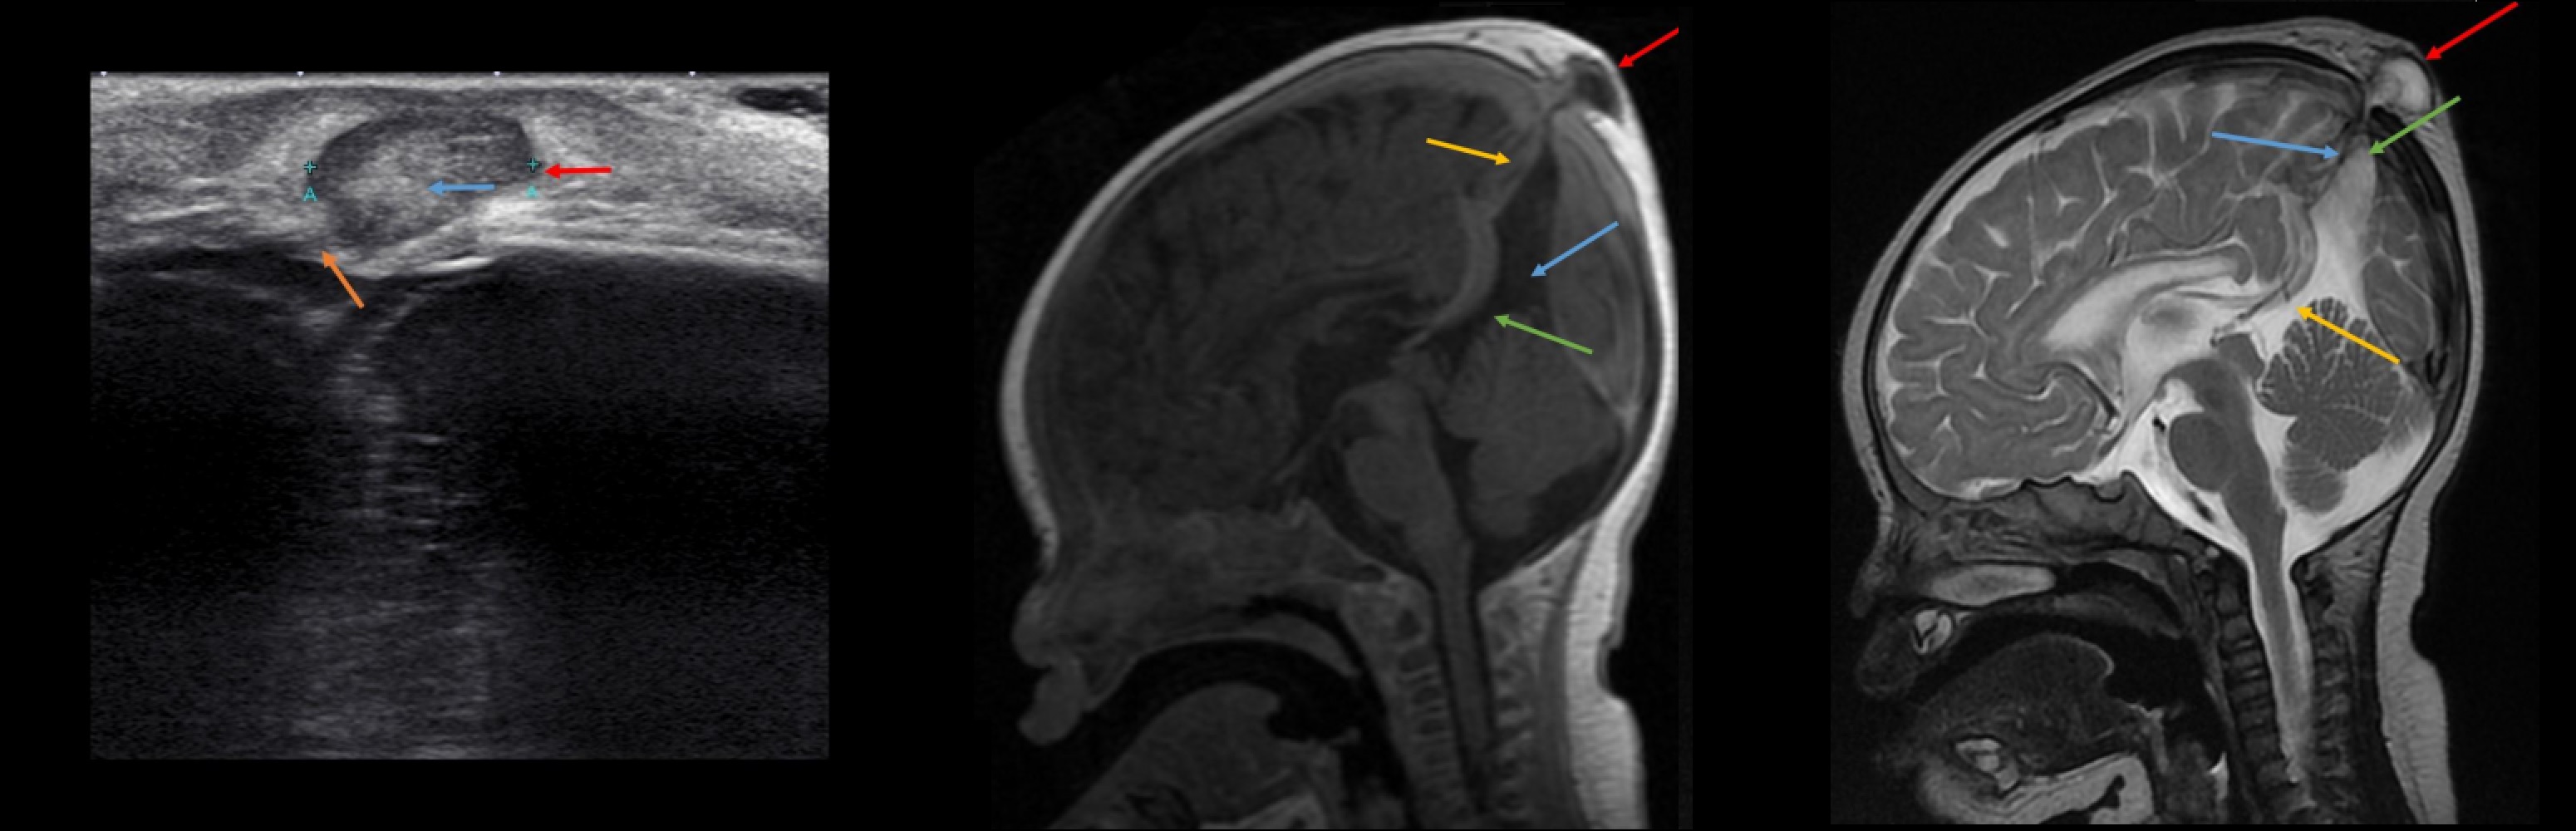 Гематома головного мозга - симптомы и лечение